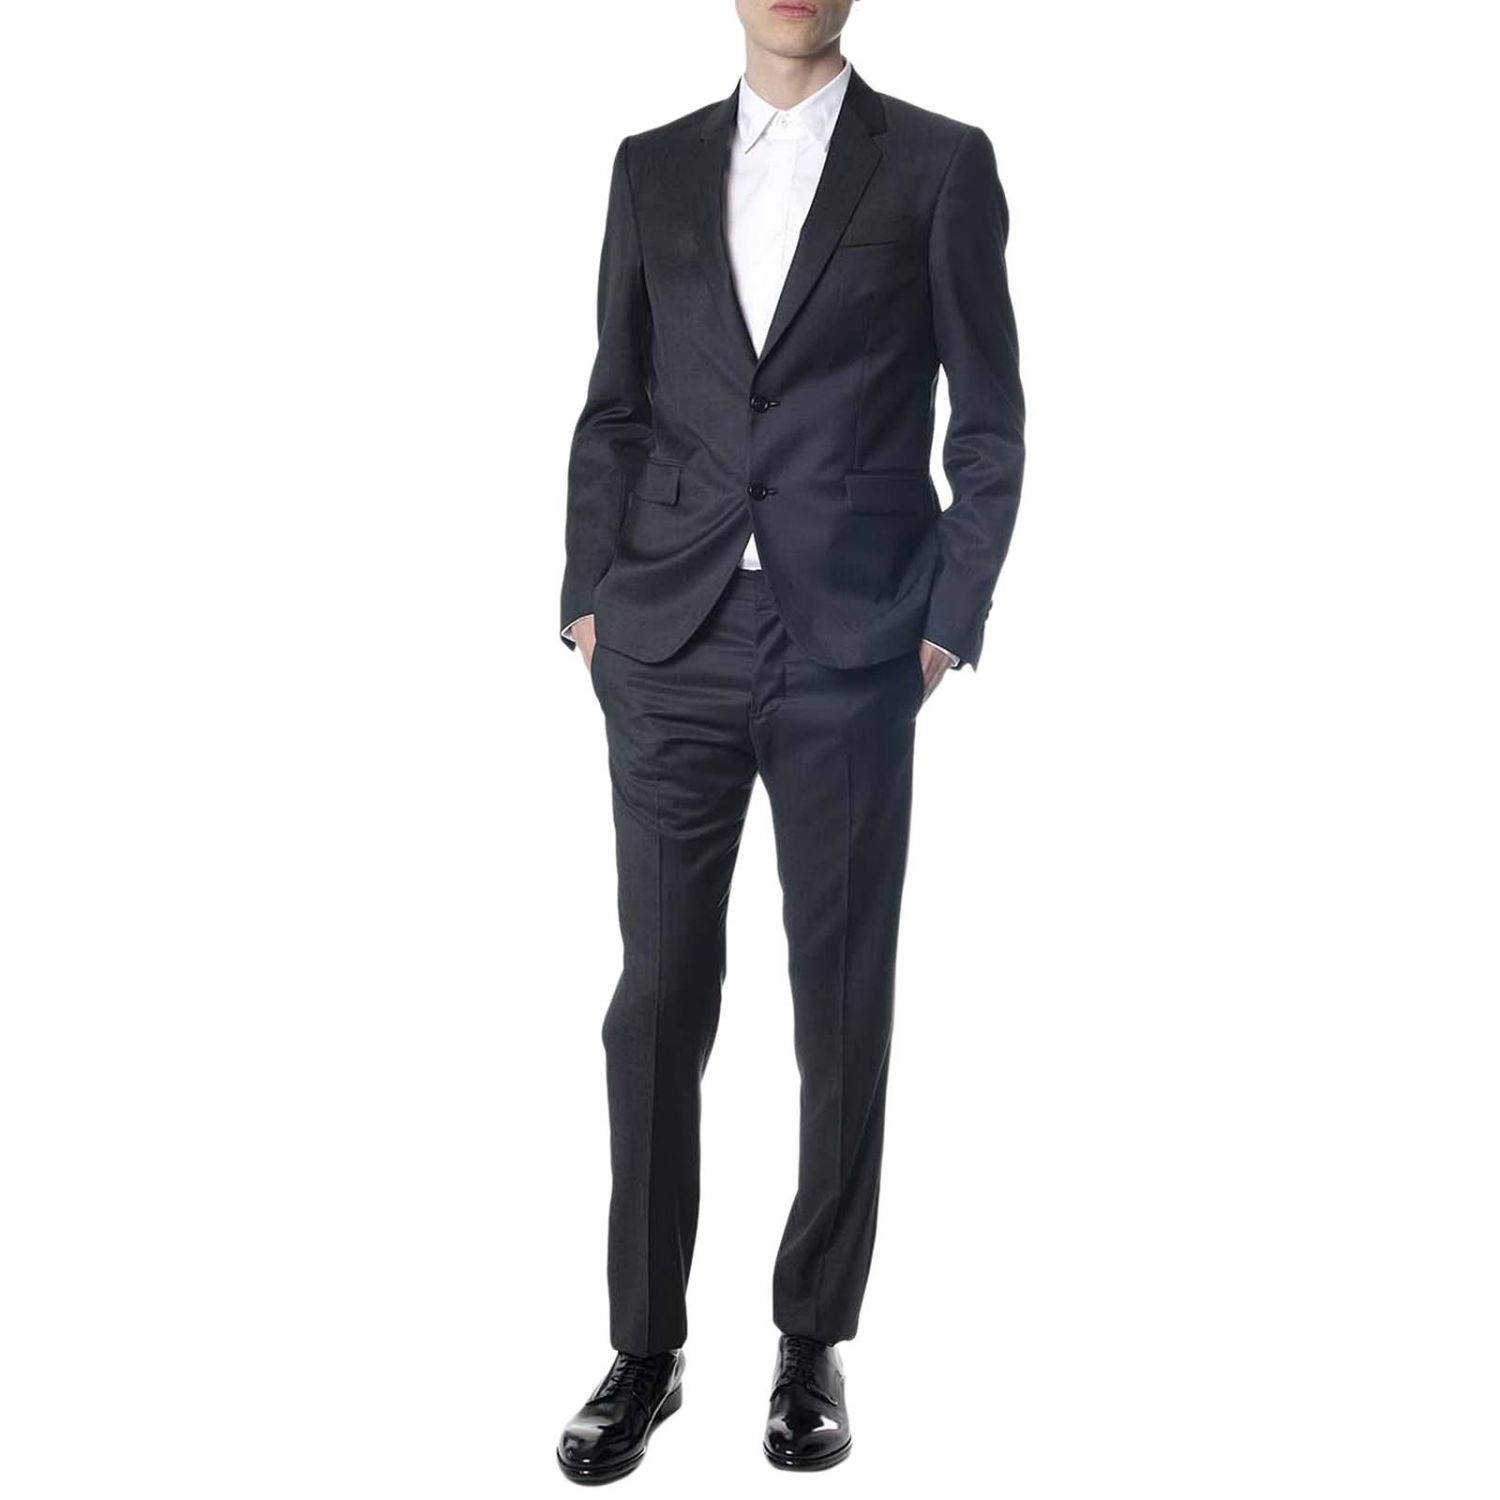 Mauro Grifoni Outlet: Suit men | Suit Mauro Grifoni Men Grey | Suit ...